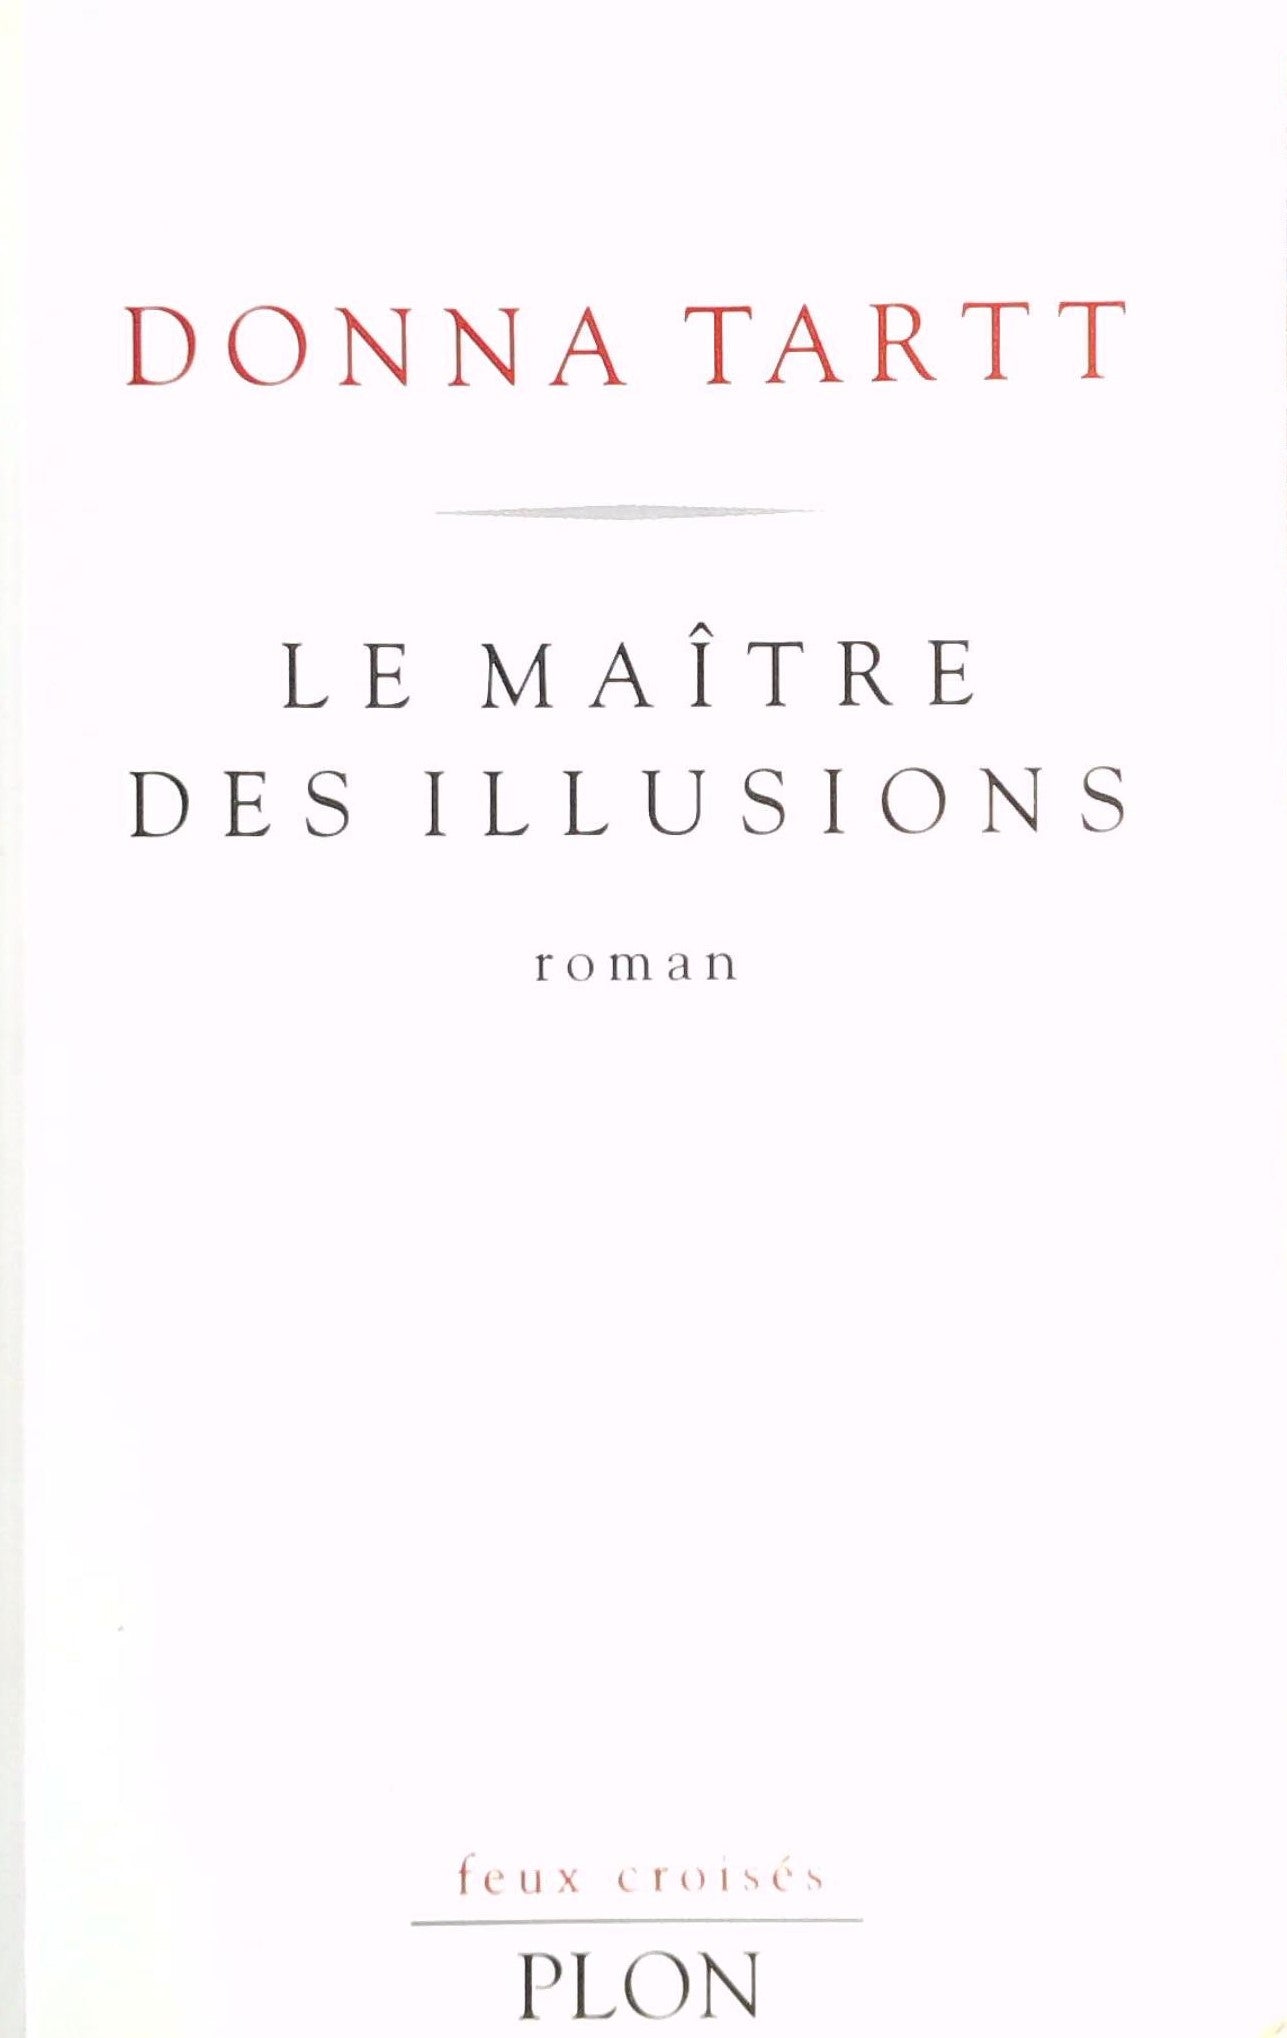 Livre ISBN 2259025935 Feux croisés : Le maître des illusions (Donna Tartt)